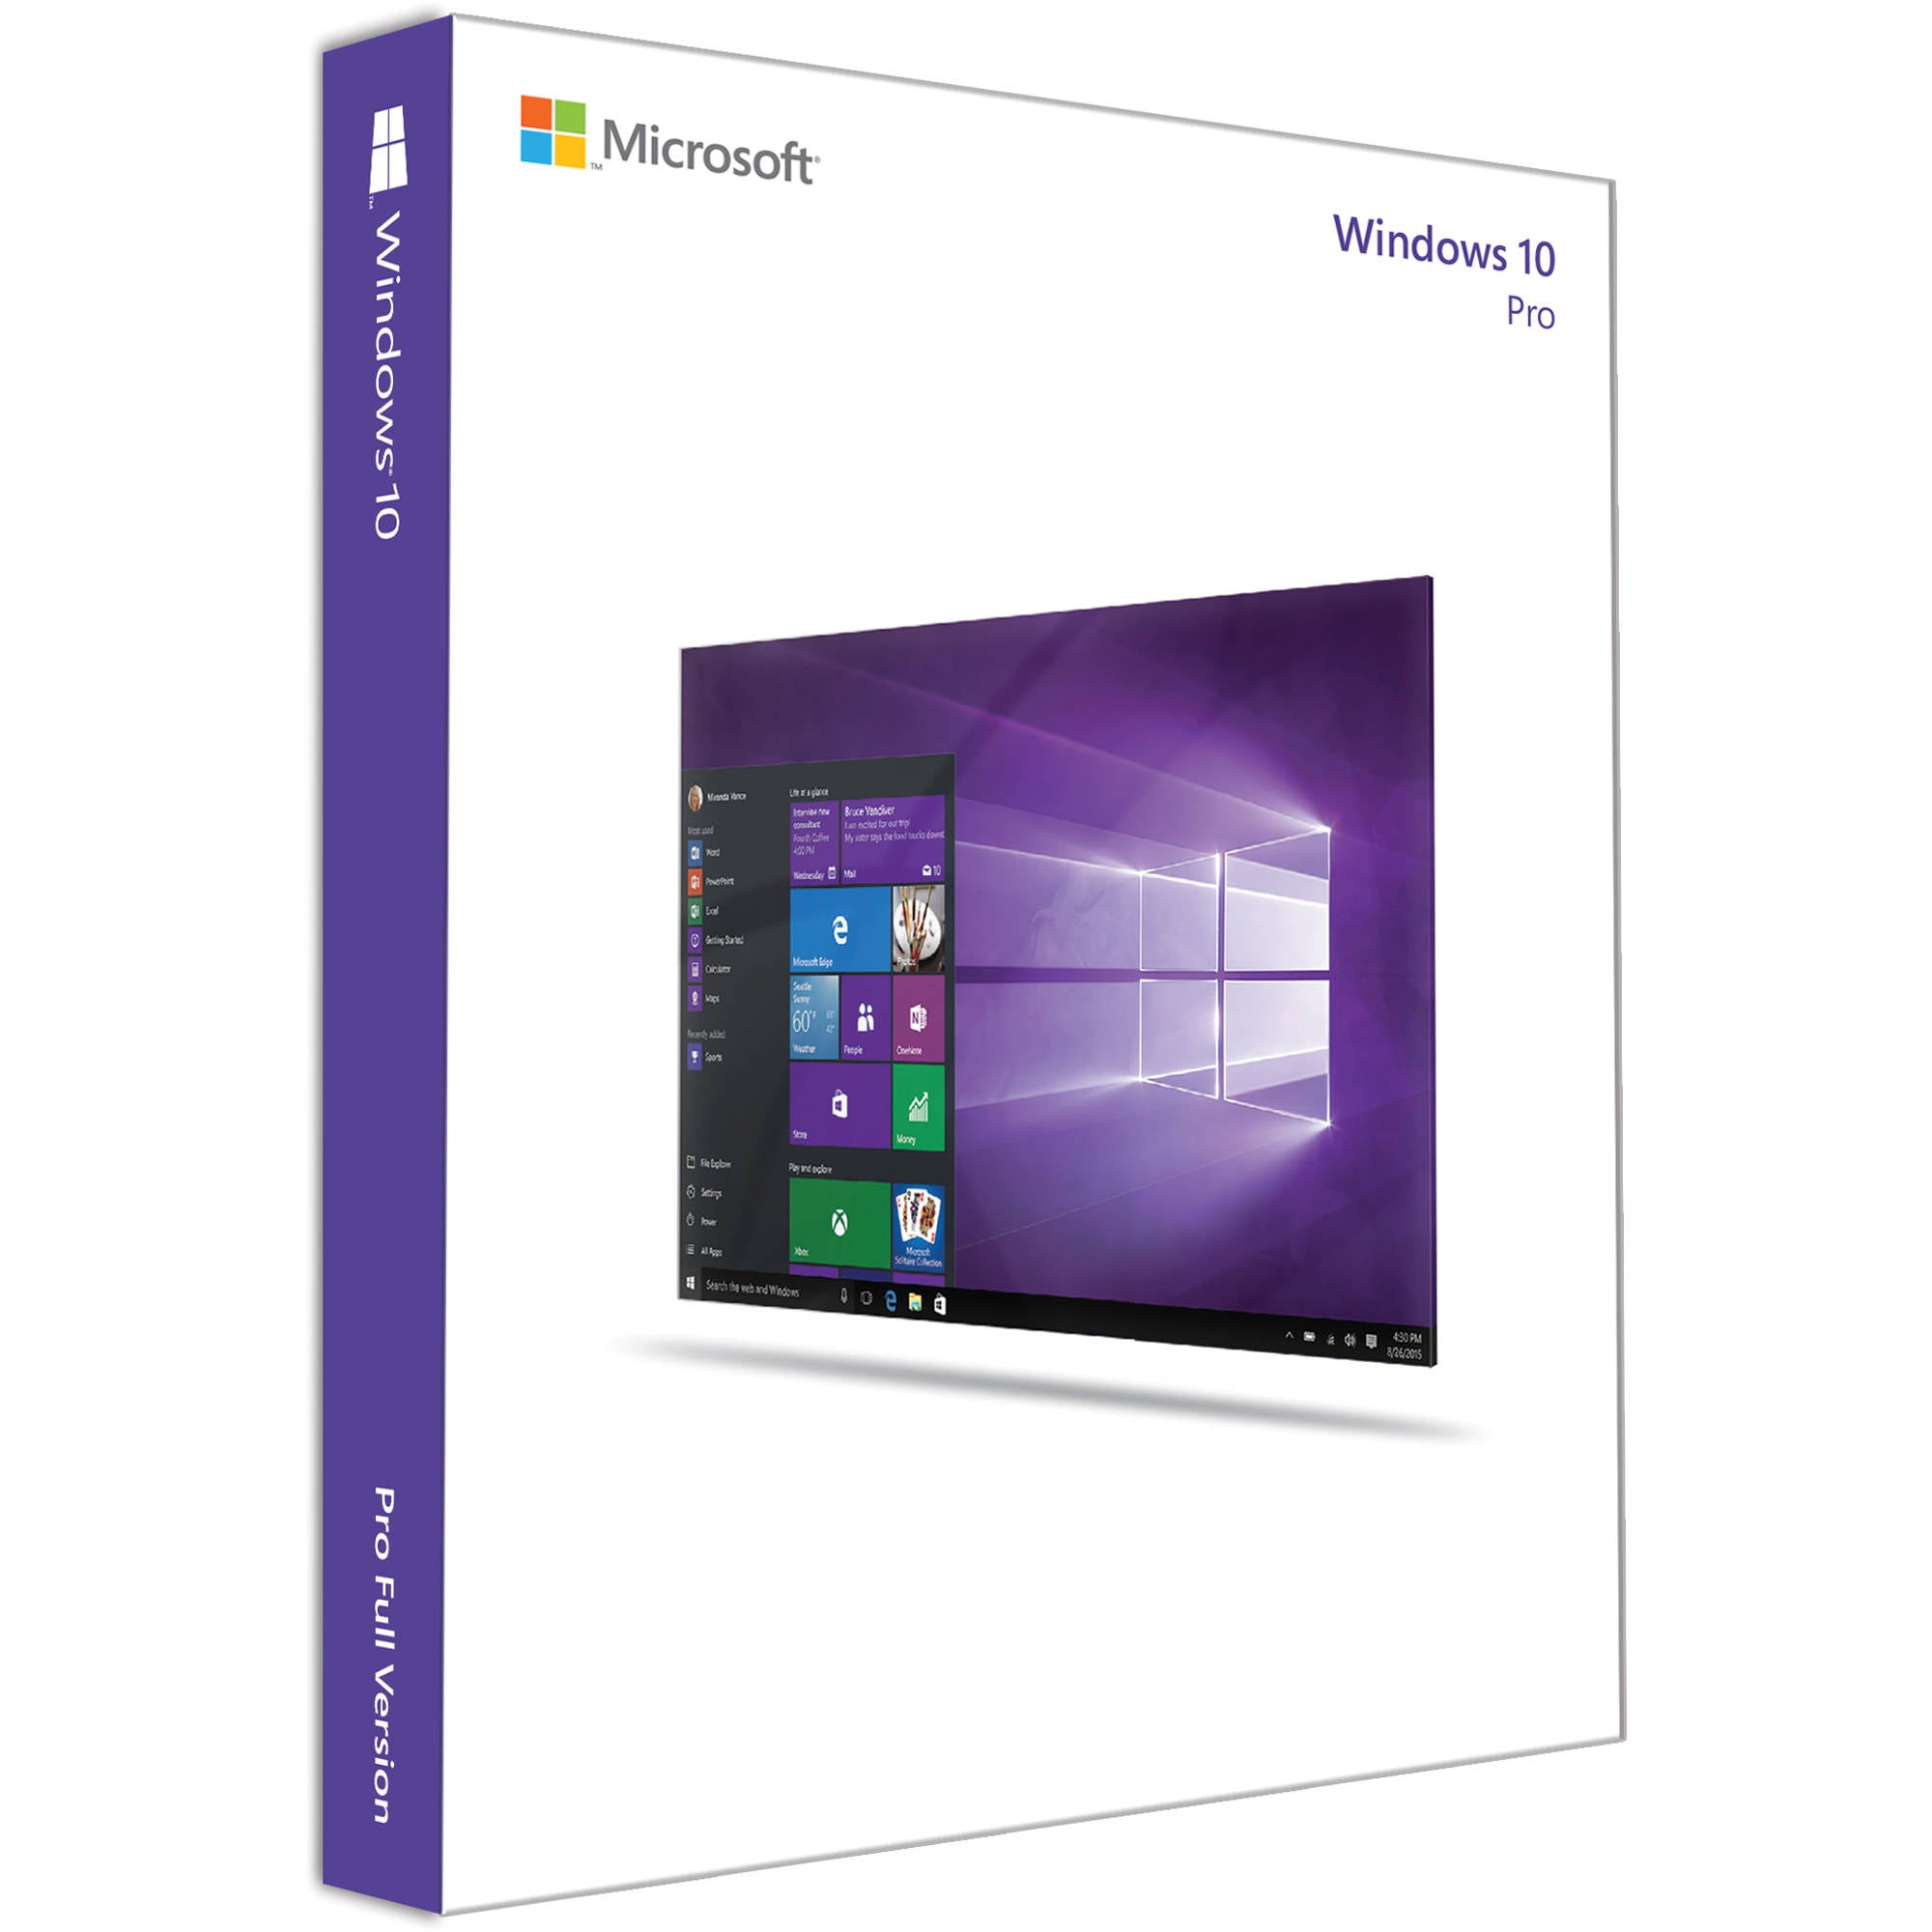 Microsoft Windows 10 Pro License | Ramjet.com